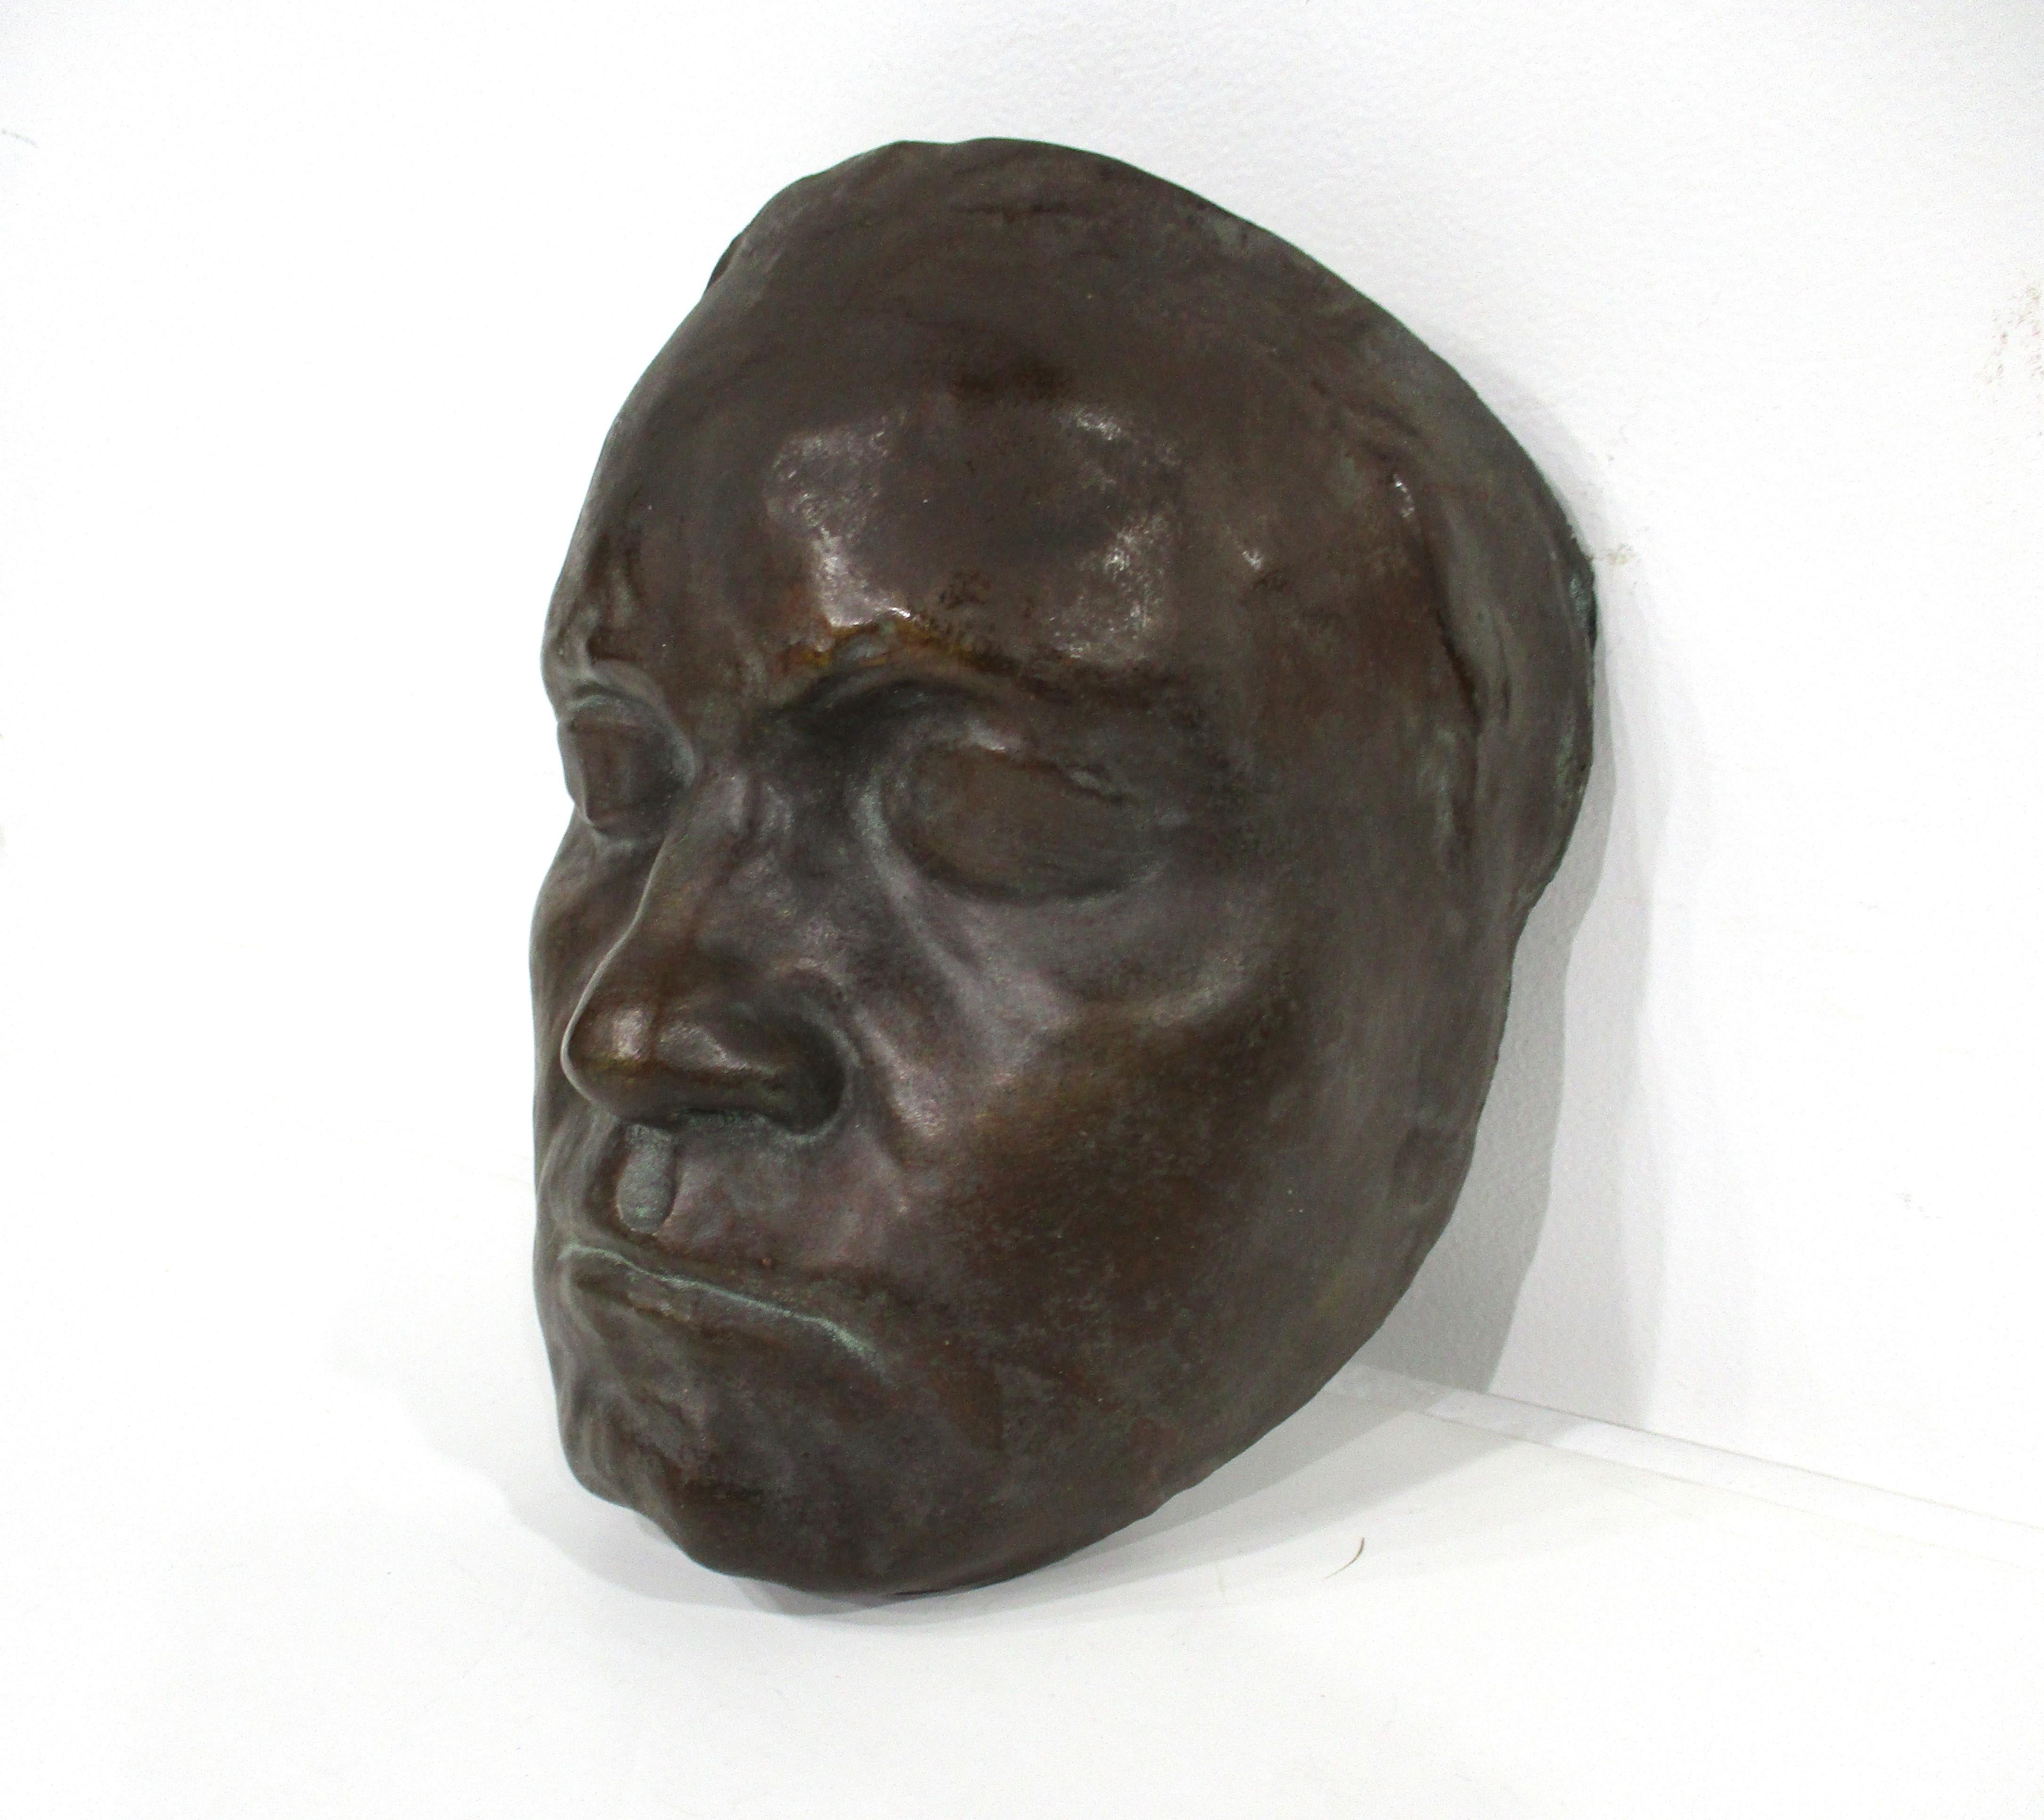 Ein Gipsabguss Maske mit großen starken Details eines männlichen Gesichts mit einer Keramik-Stil Glasur in der Art der Bronze, die sehr realistisch ist. Dies könnte eine so genannte Totenmaske sein, die in den frühen 1900er Jahren bis in die späten